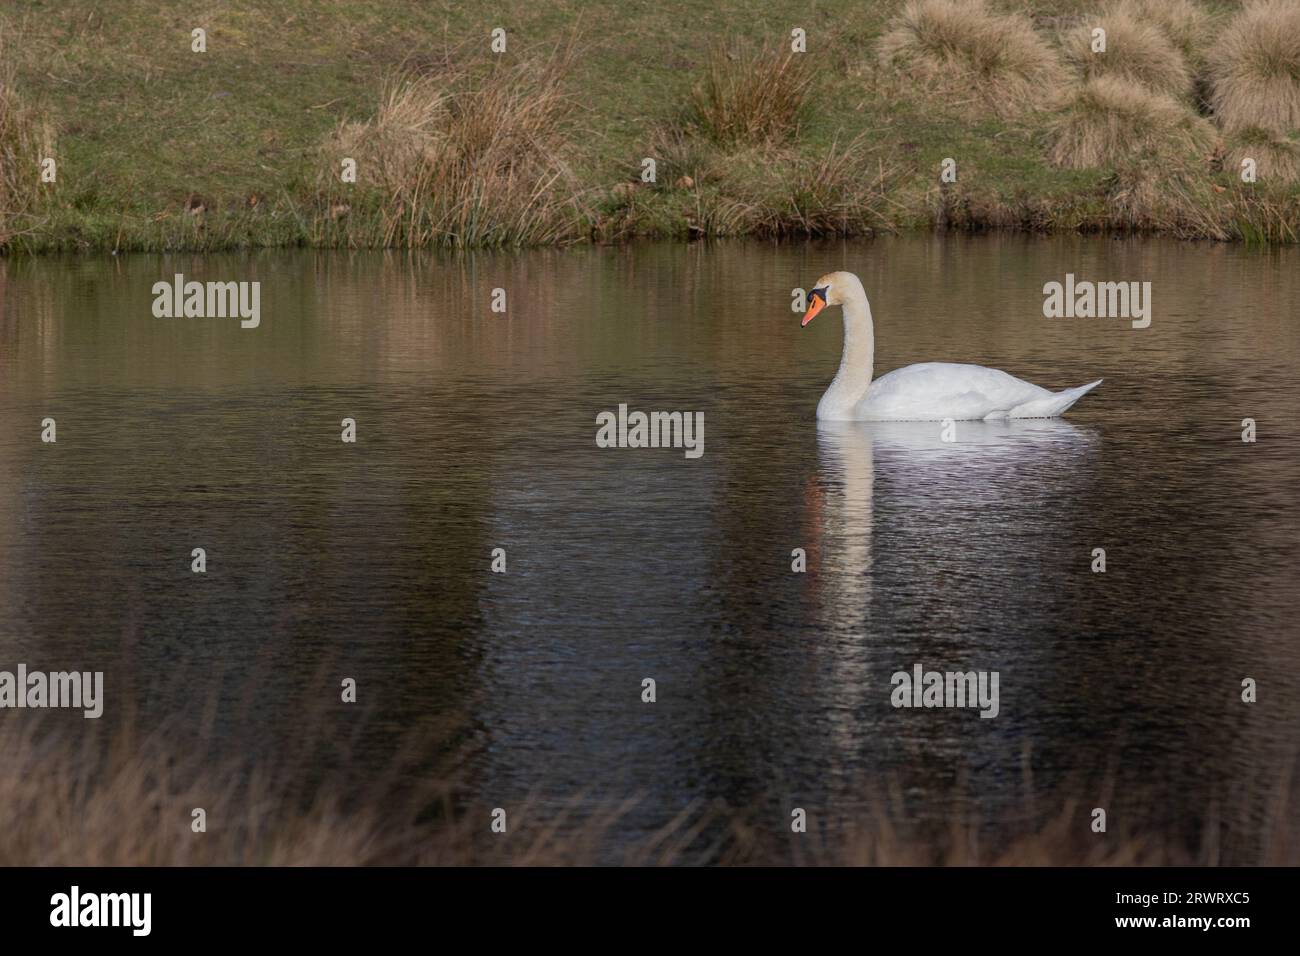 Una scena tranquilla in cui un cigno muto nuota su un lago. Non ci sono persone e c'è spazio per il testo intorno al cigno Foto Stock